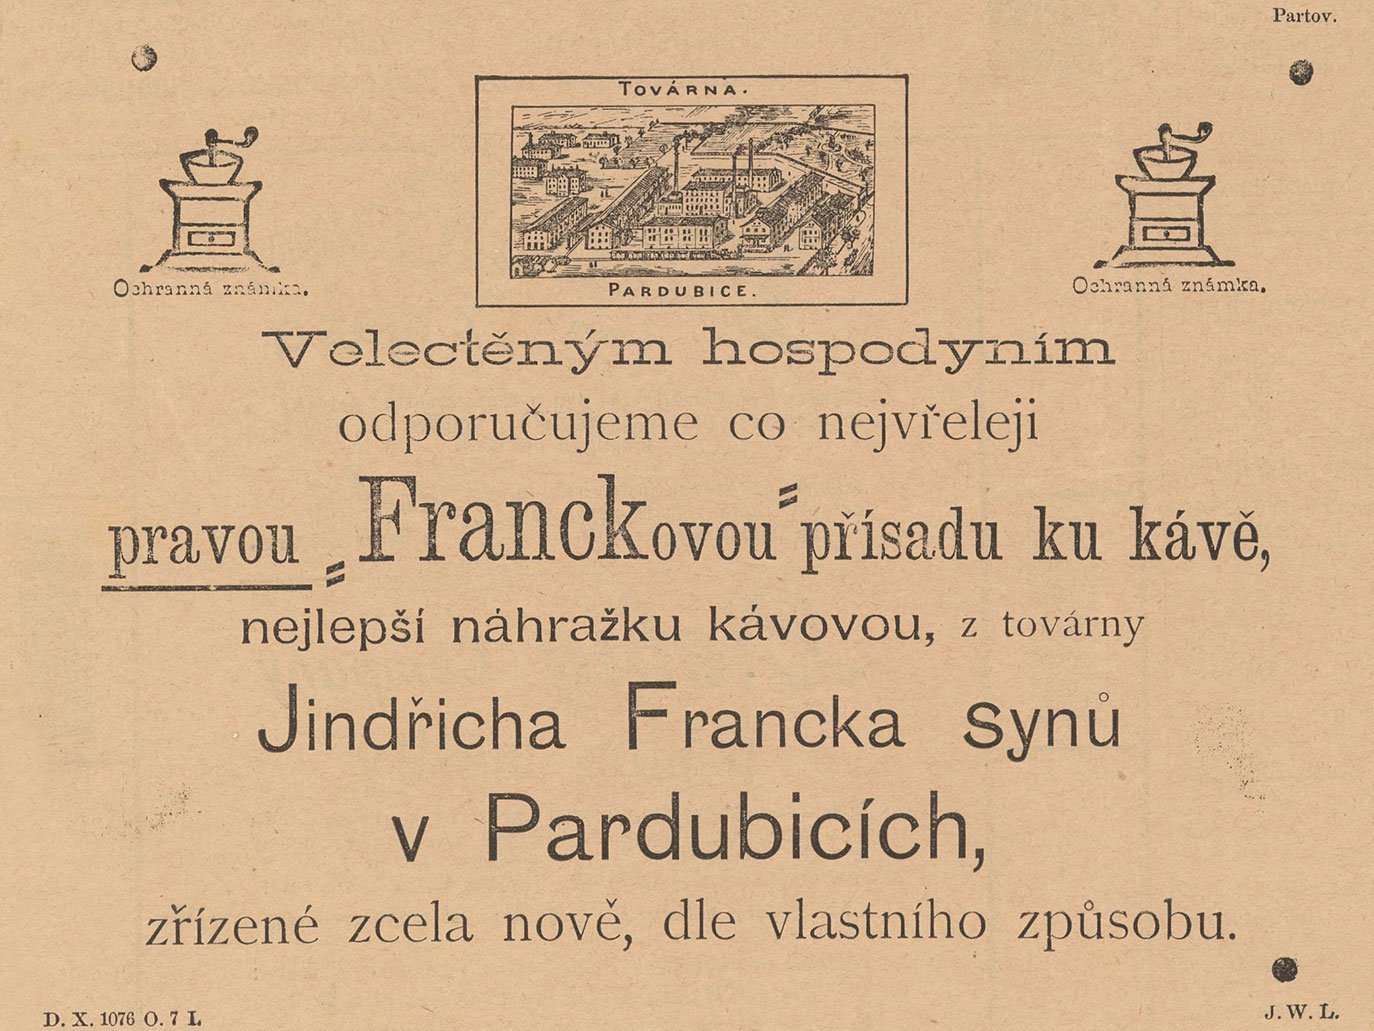 Reklama v regionálním tisku, zde Pernštýn, 15. 11. 1897